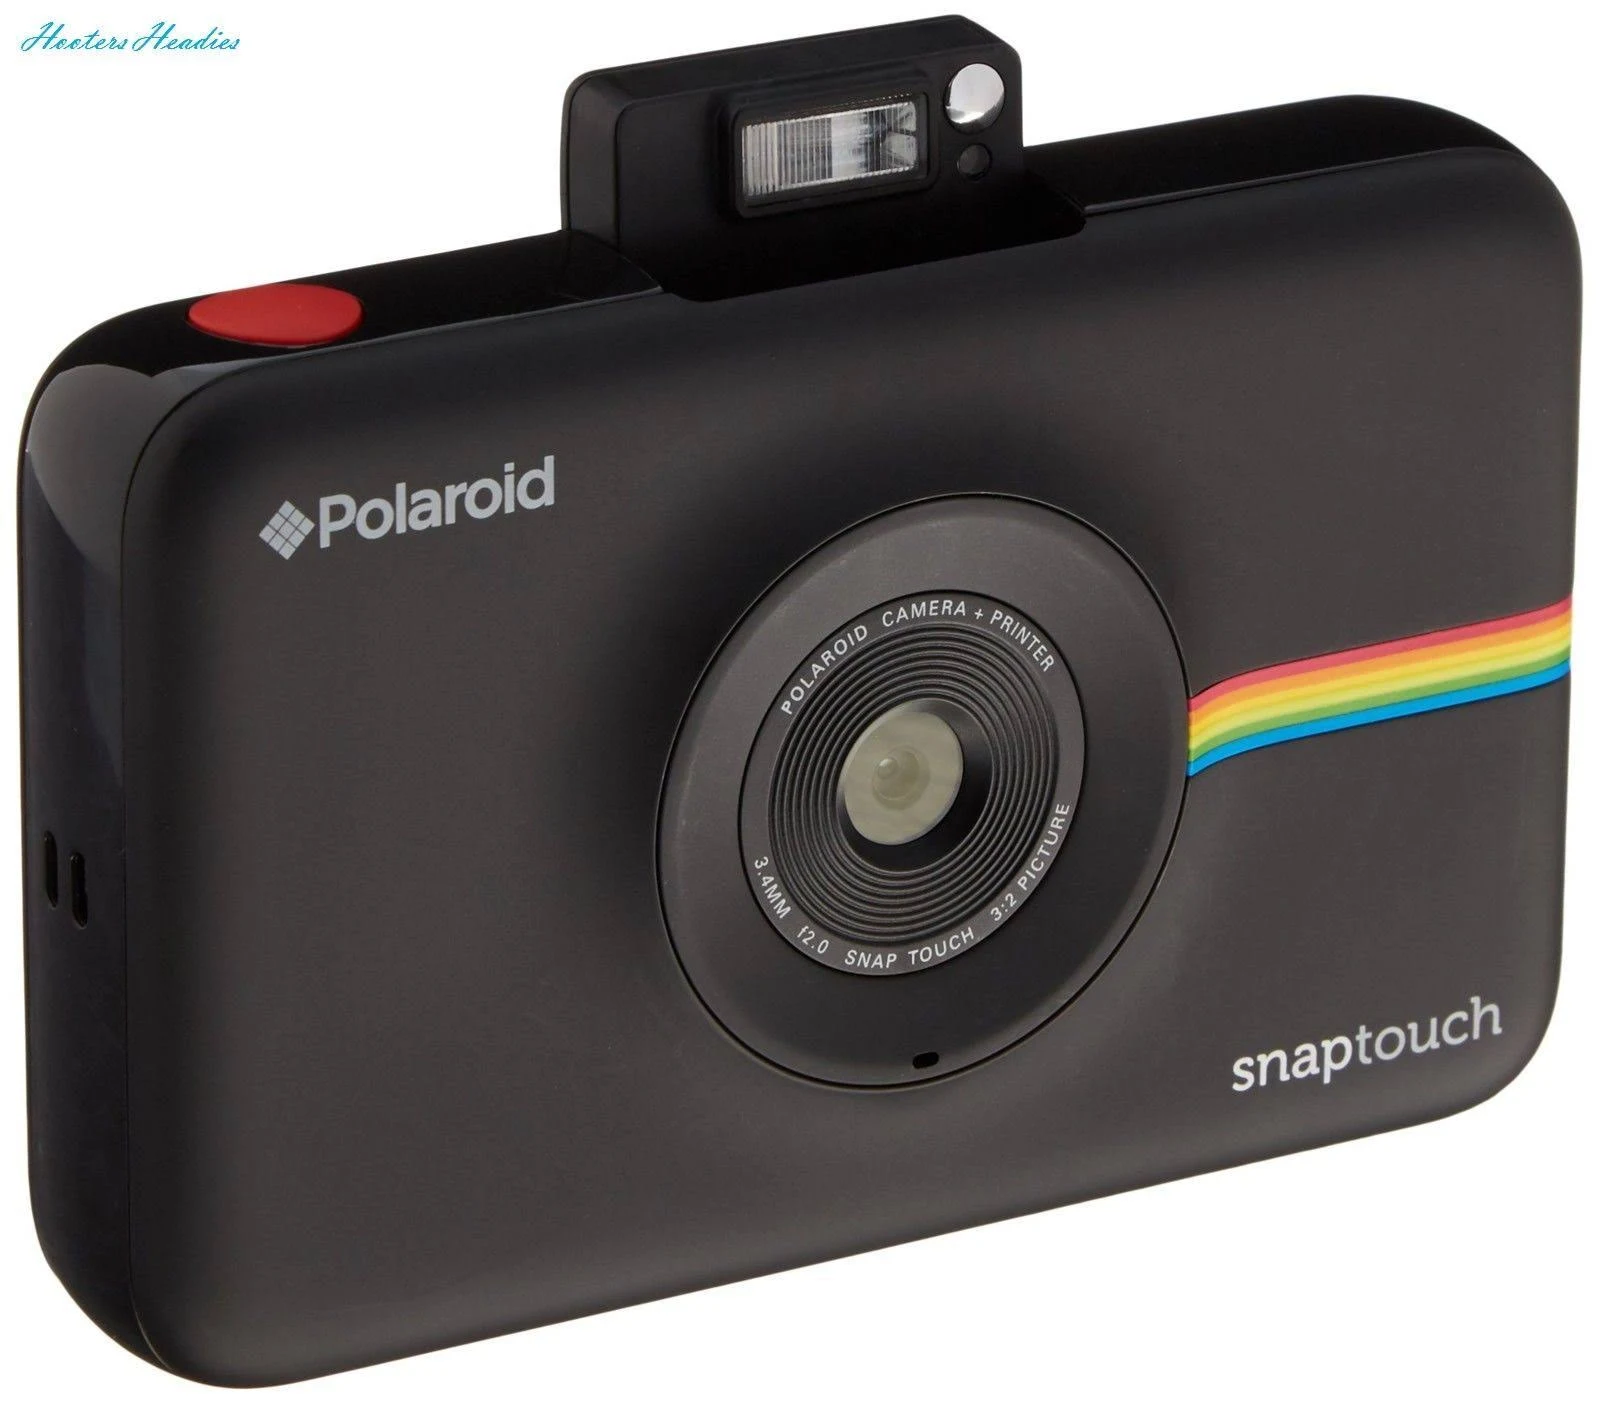 Polaroid كاميرا رقمية بطباعة فورية تعمل باللمس مع شاشة LCD (سوداء) مع تقنية الطباعة Zink Zero Ink